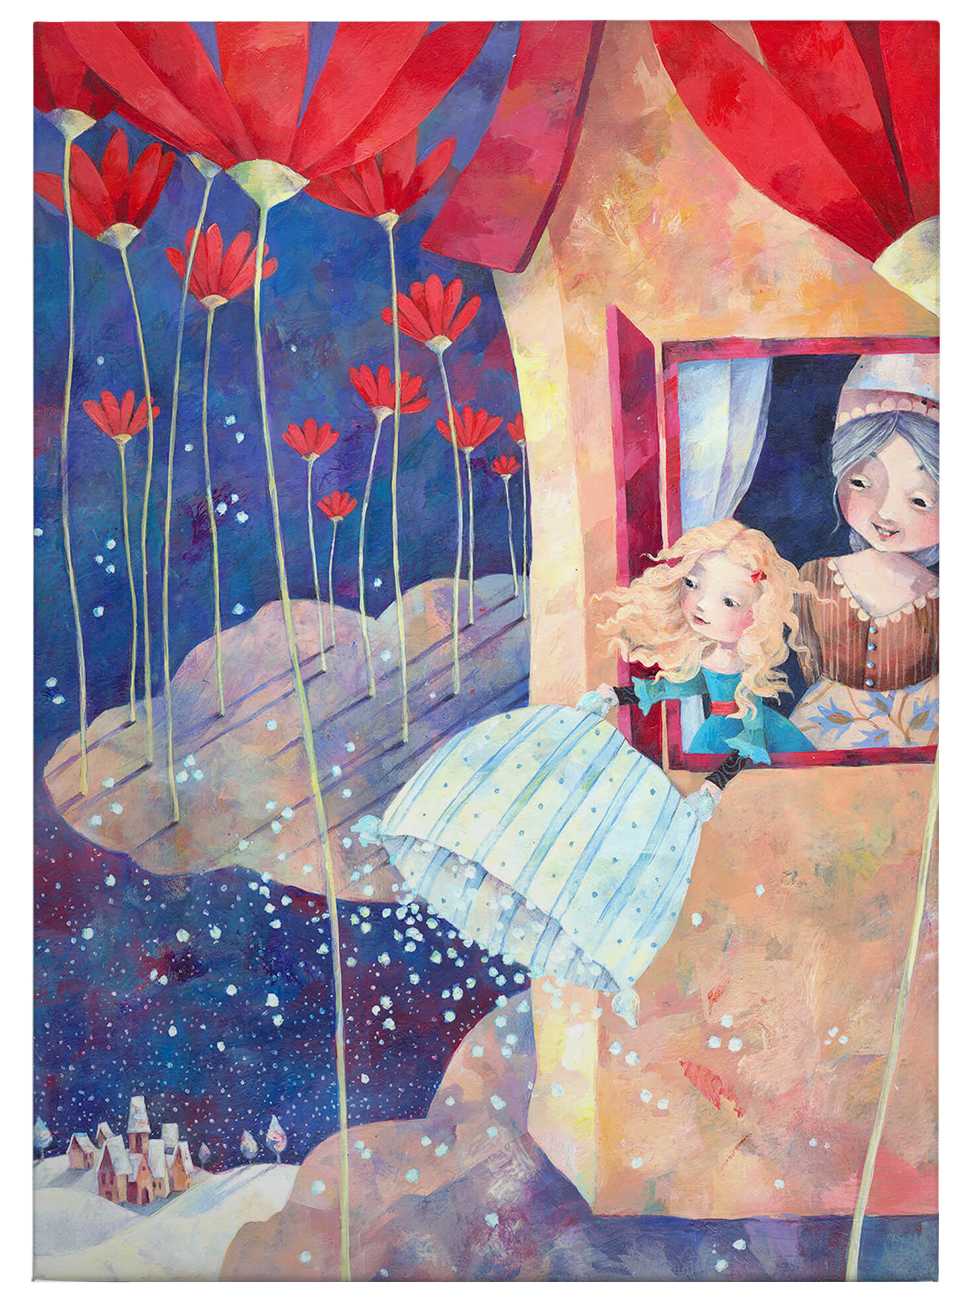             Canvas schilderij Fairytale Frau Holle, door Blanz - 0,50 m x 0,70 m
        